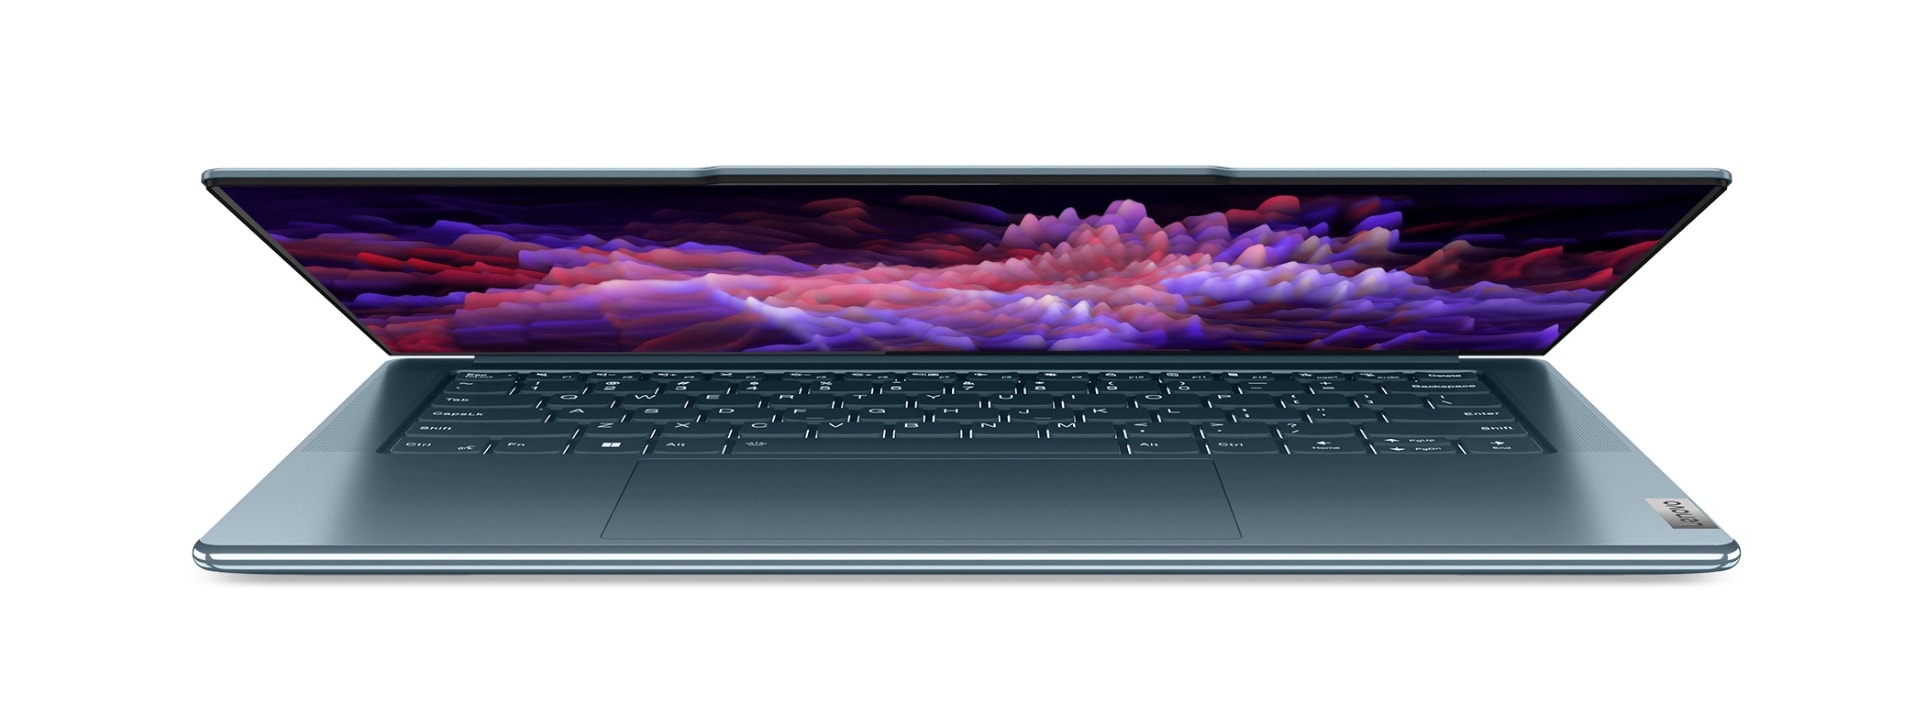 Μπροστινή λήψη από μισάνοιχτο Lenovo Yoga laptop